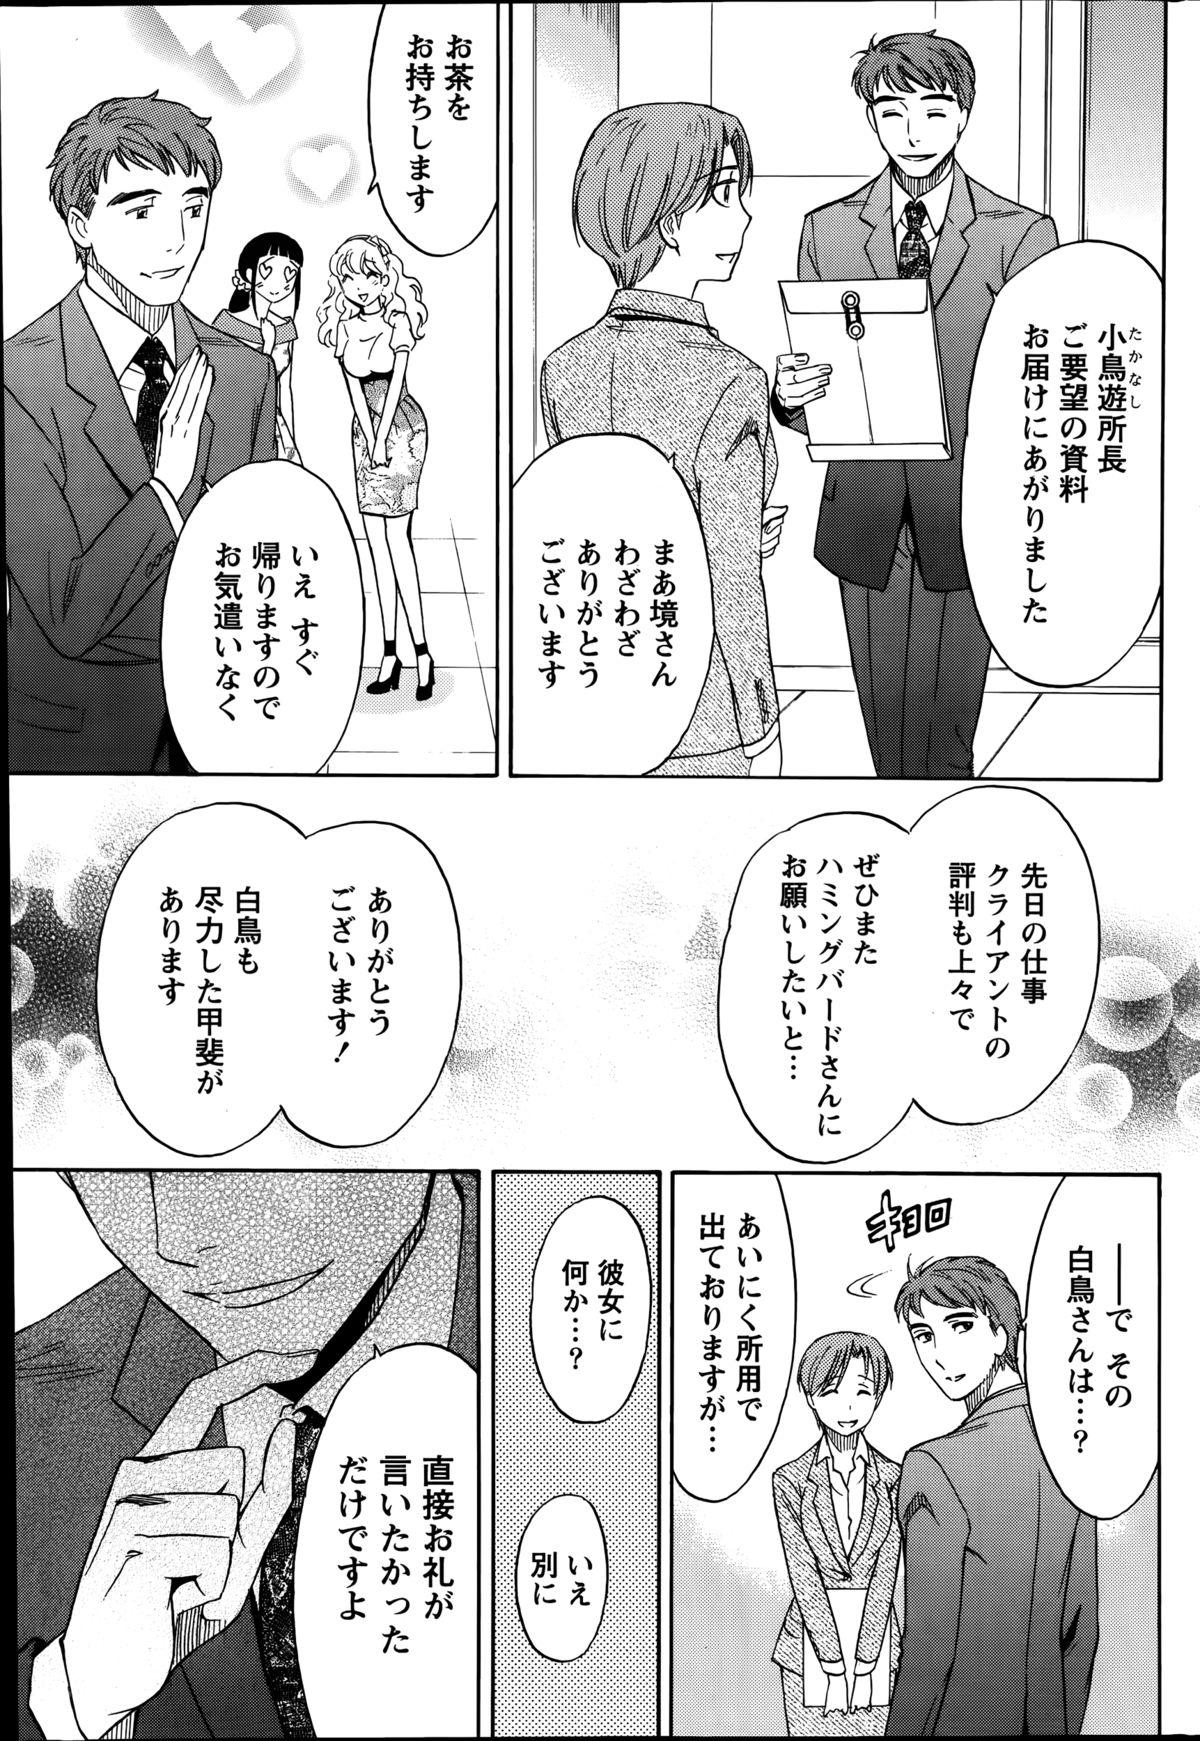 [Sawada Furope] Nise kon! - Spectacular Happy Sham Marriage! Ch.1-5 61